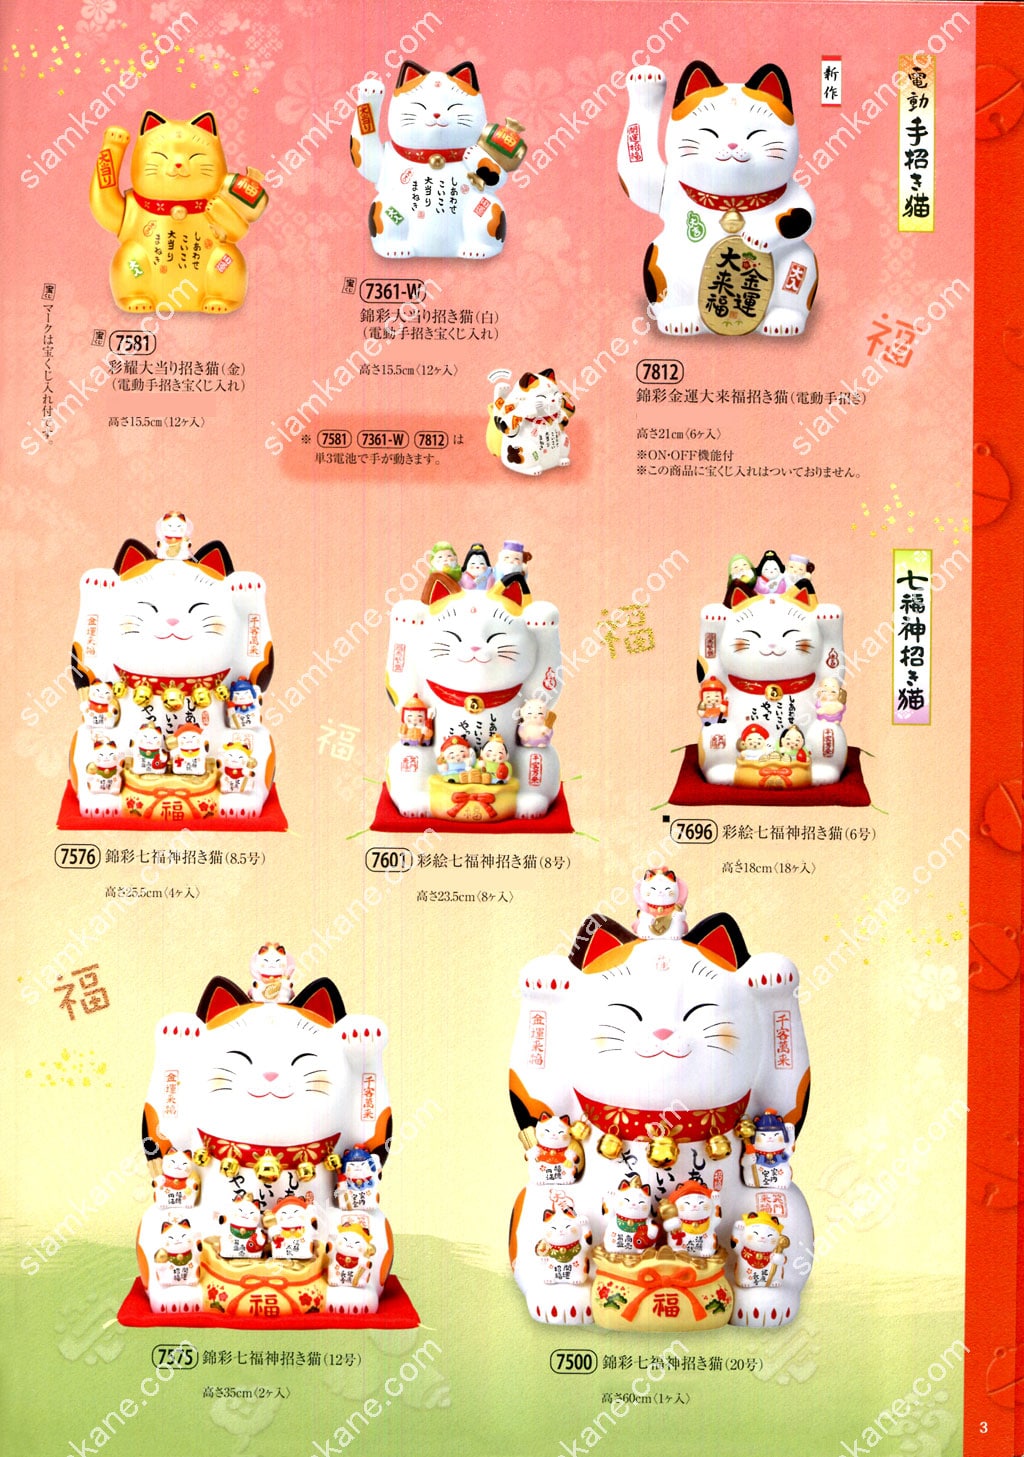 แคตตาล็อก แมวกวัก แมวกวักญี่ปุ่น แมวญี่ปุ่น หน้า 3